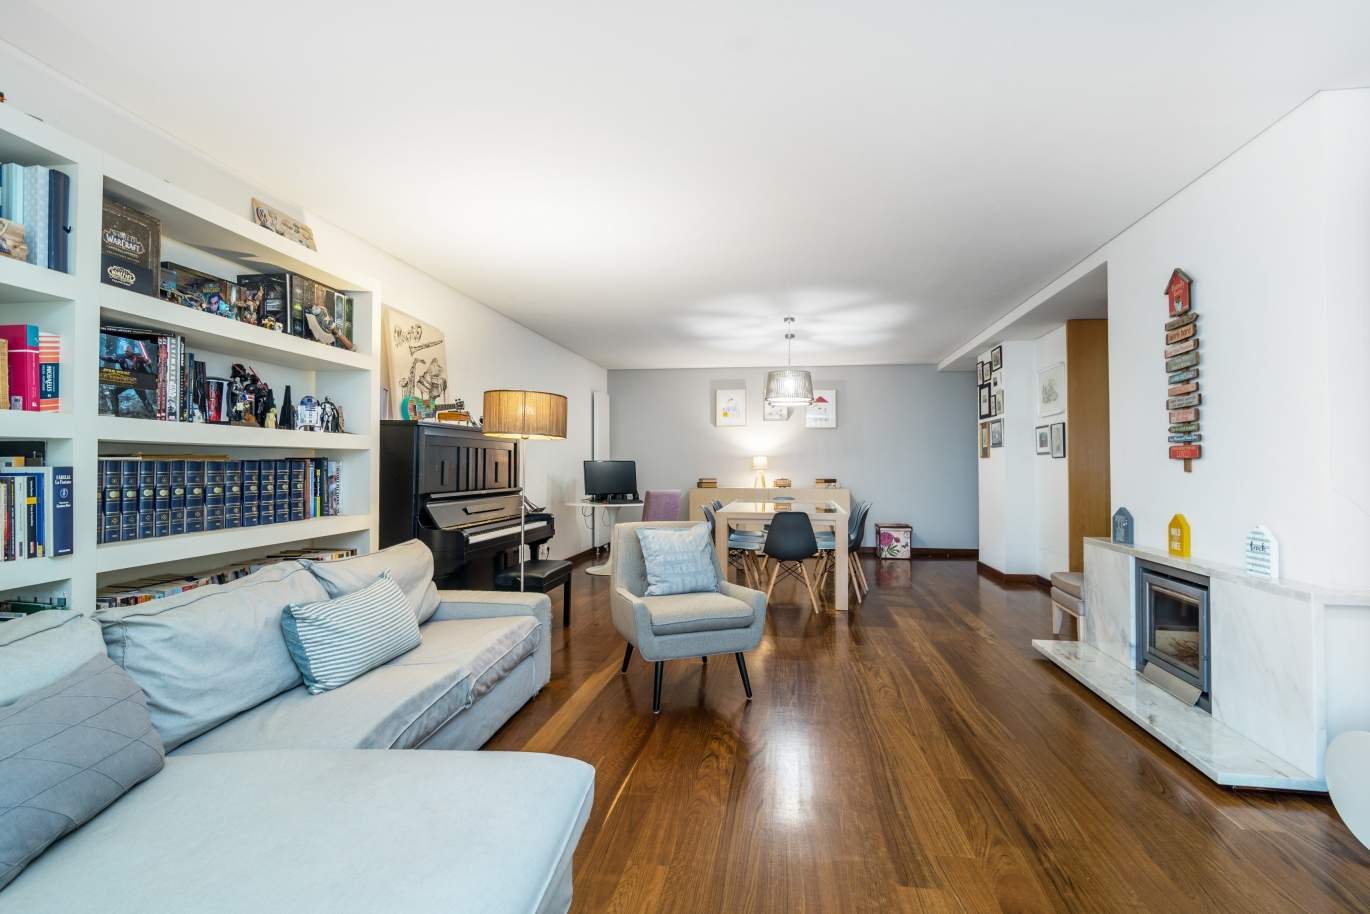 Venda apartamento em condomínio privado com vistas rio, Porto, Portugal_121026